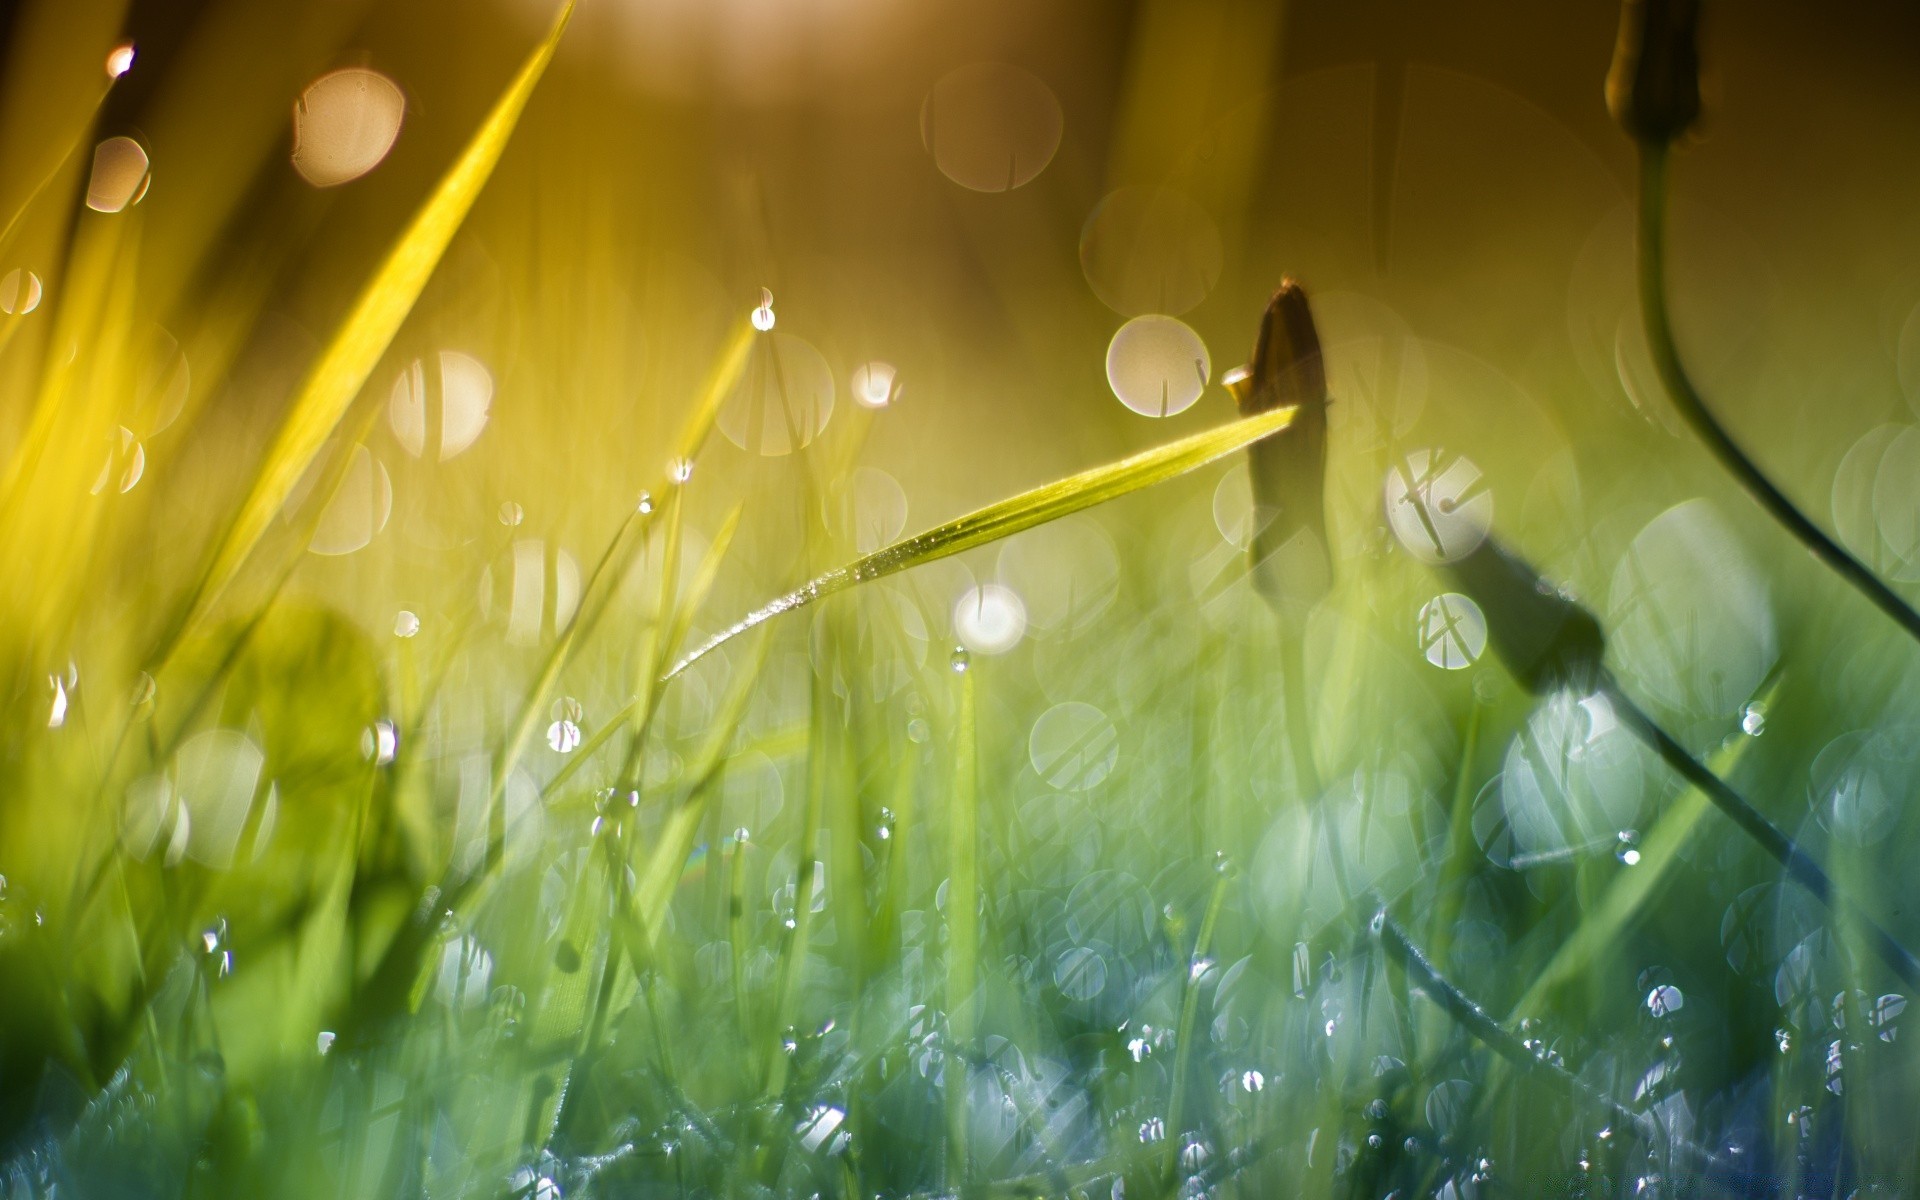 боке трава газон сенокос флора сад солнце росы природа поле дождь падение лето рост рассвет хорошую погоду лист пышные яркий свет лезвие